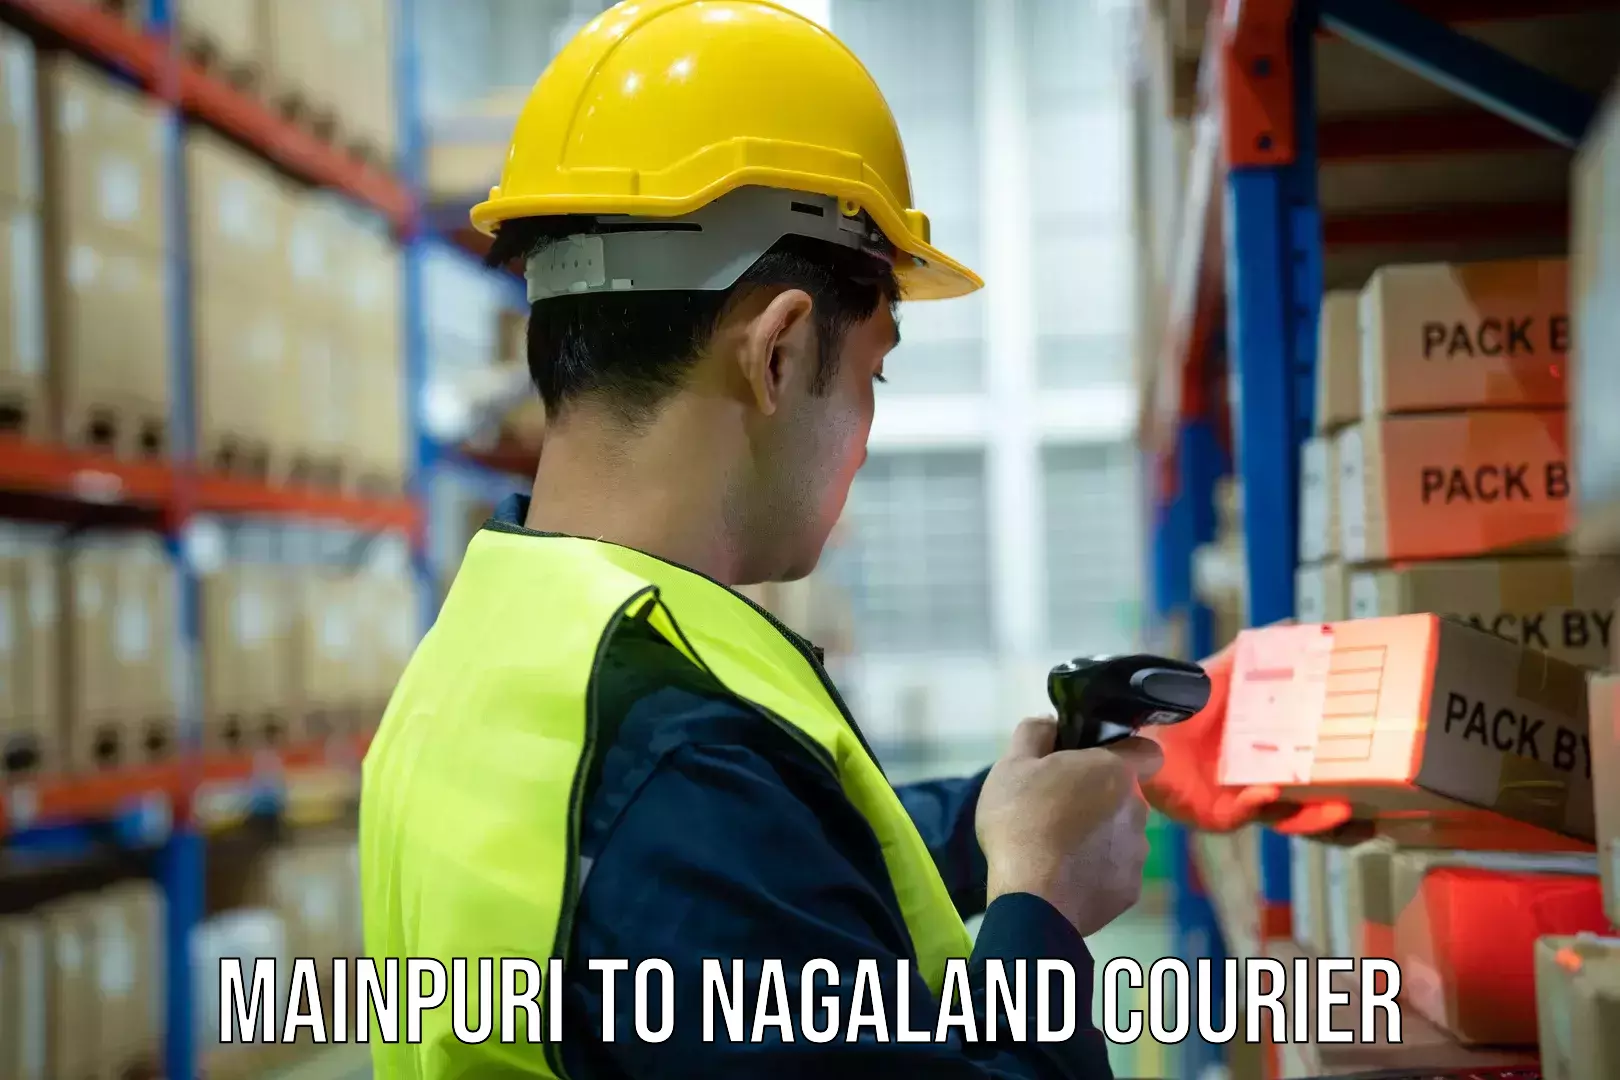 Holiday shipping services Mainpuri to Nagaland